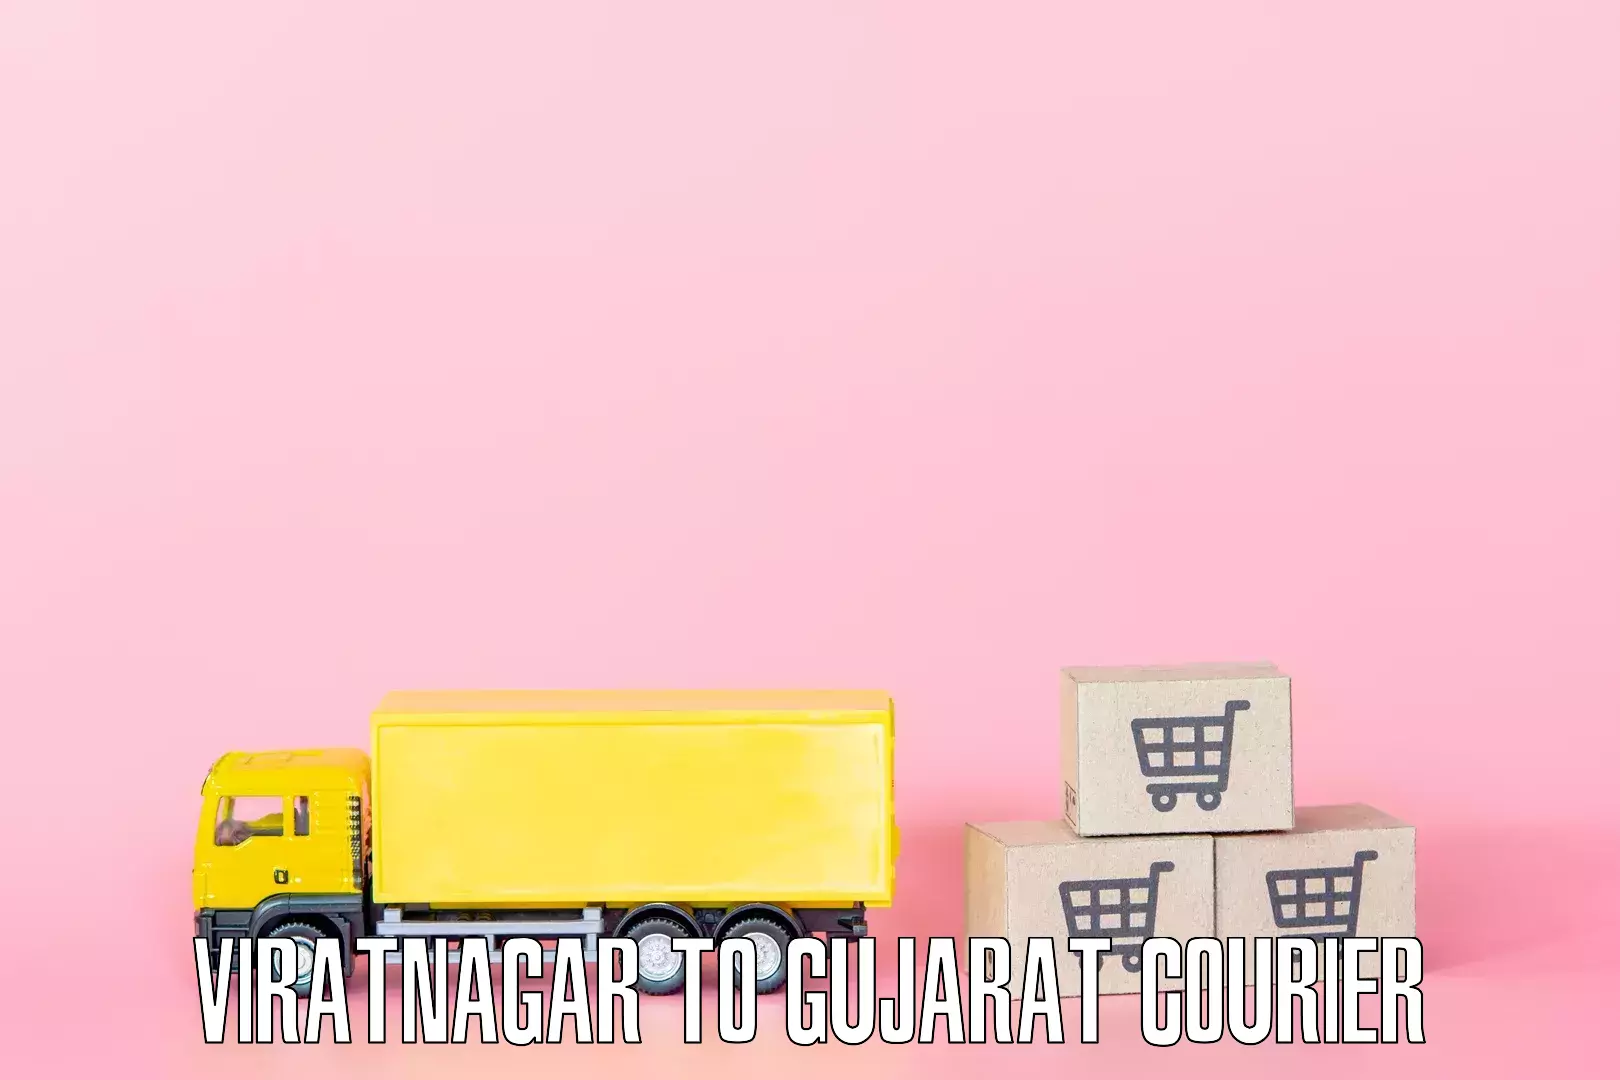 Reliable furniture transport Viratnagar to Dholera